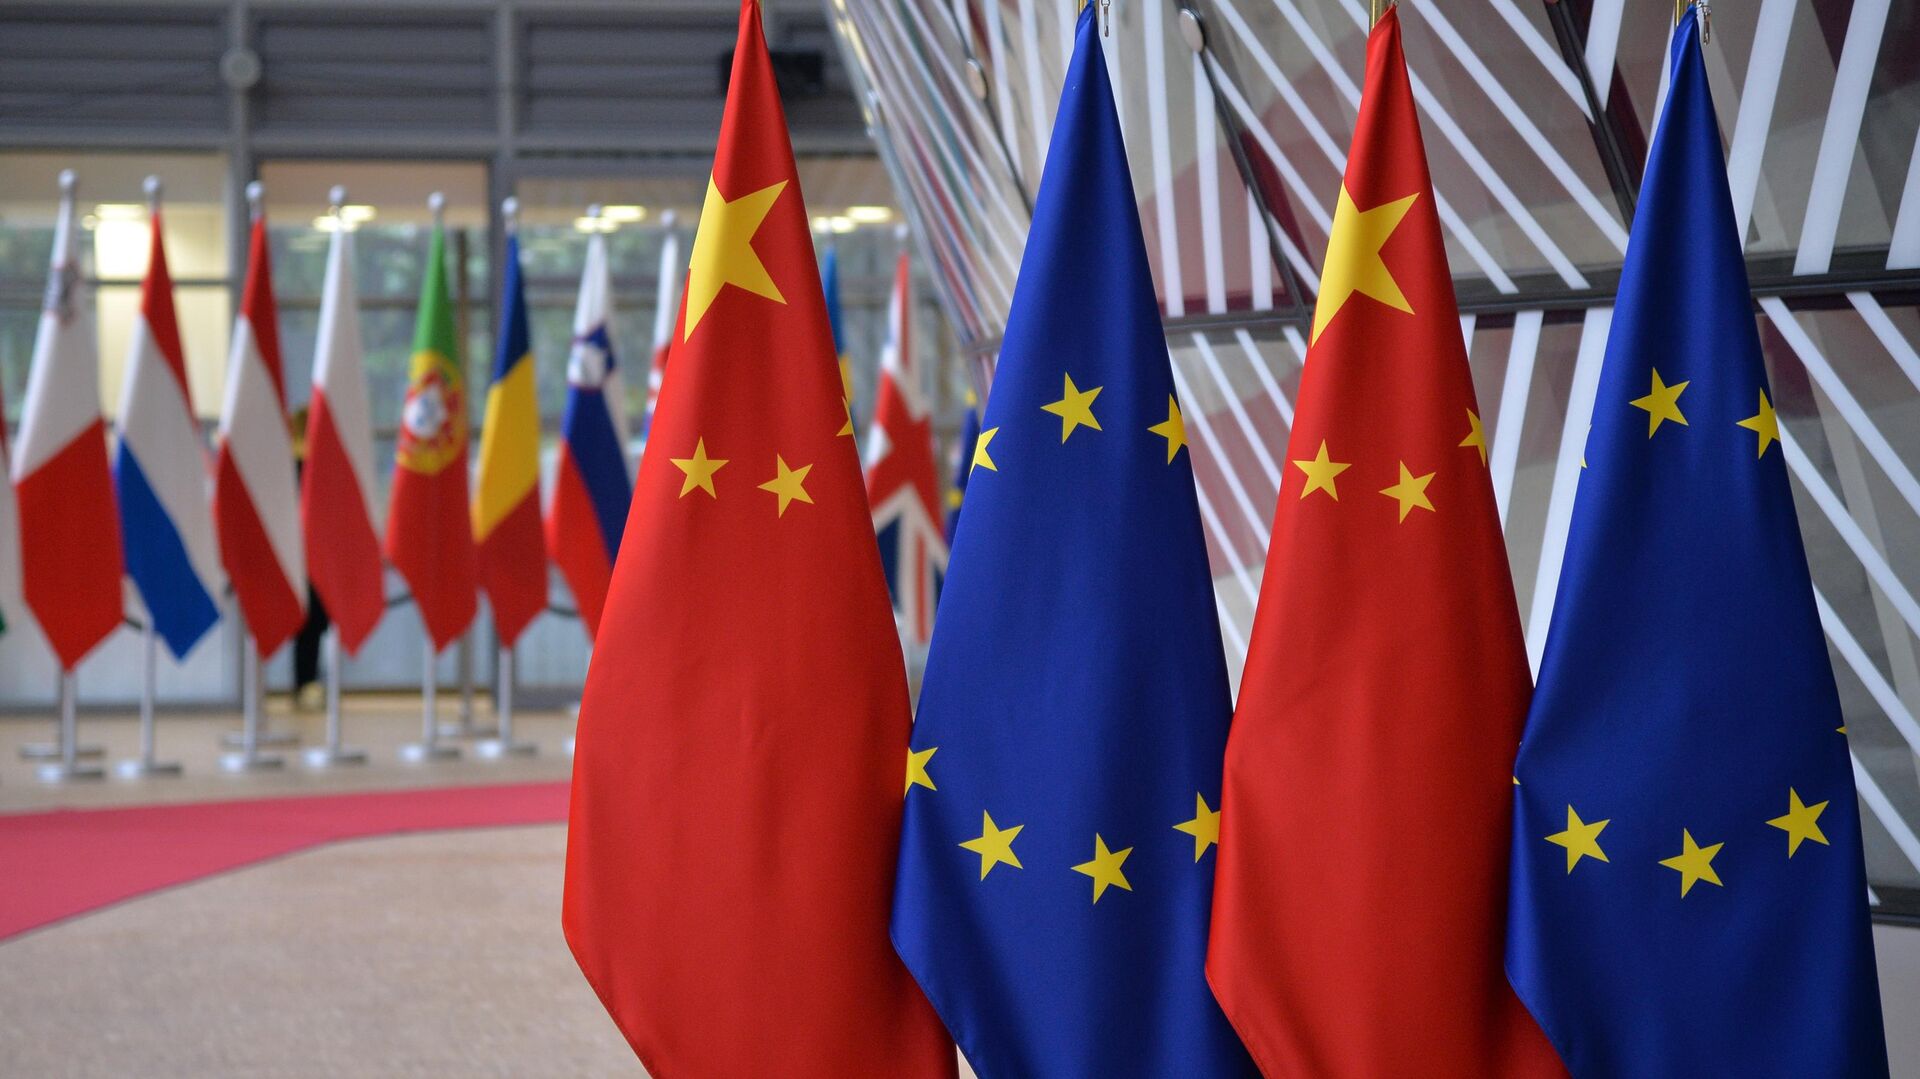 Флаги Европейского союза и государственные флаги КНР на саммите ЕС-КНР в Брюсселе. 9 апеля 2019 - РИА Новости, 1920, 07.12.2022